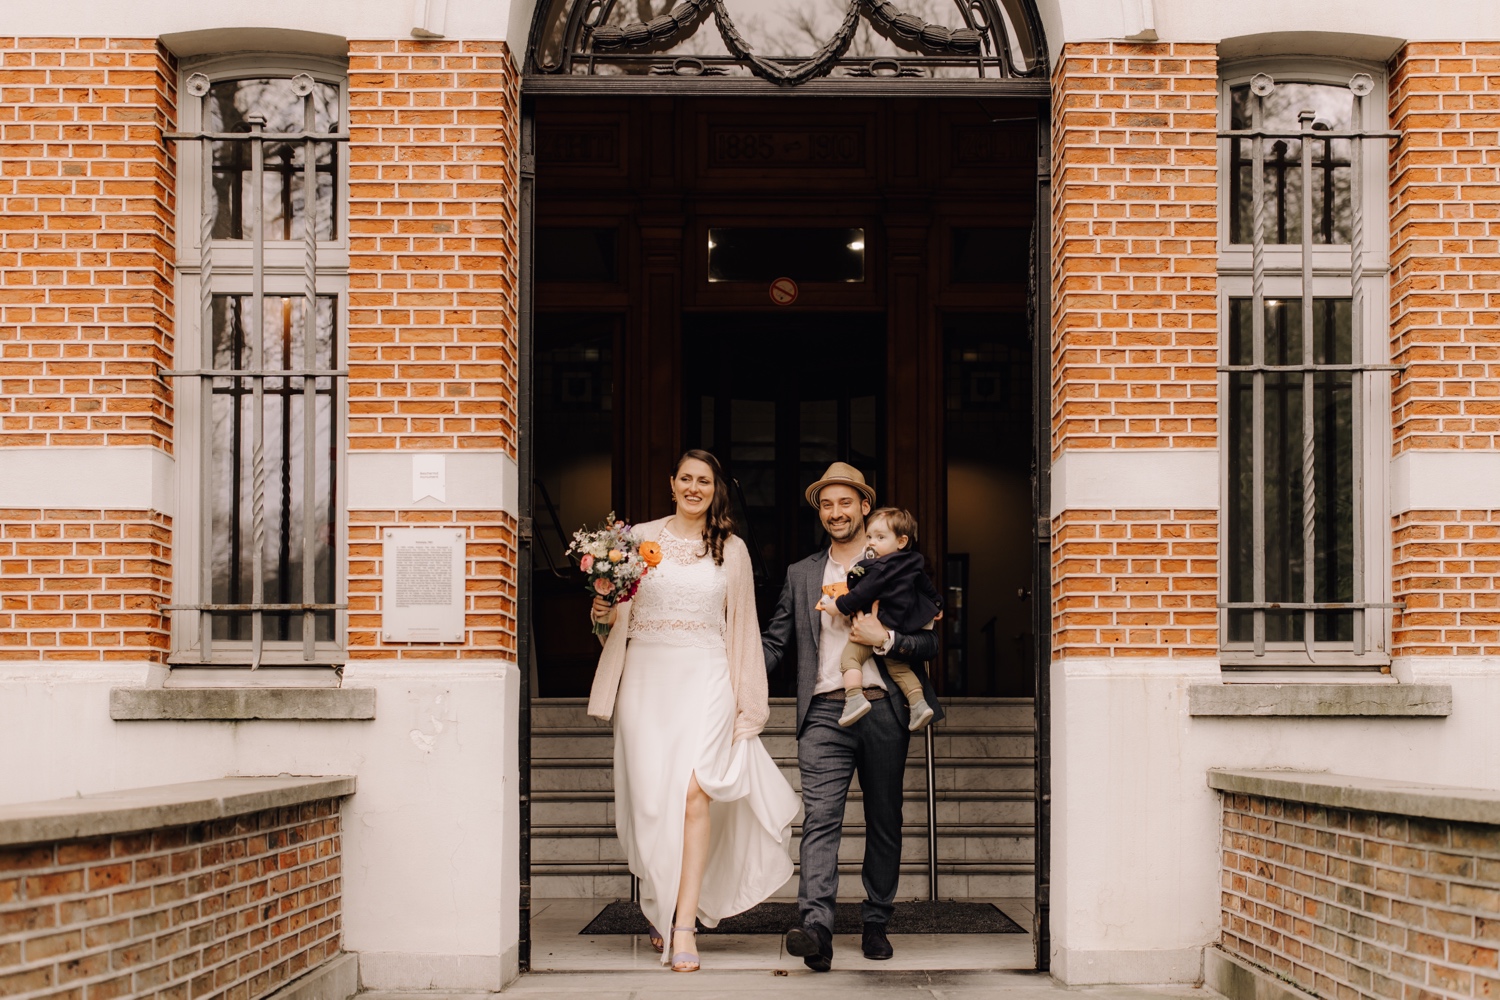 Huwelijksfotograaf Limburg - bruidspaar wandelt stadhuis uit samen met zoontje